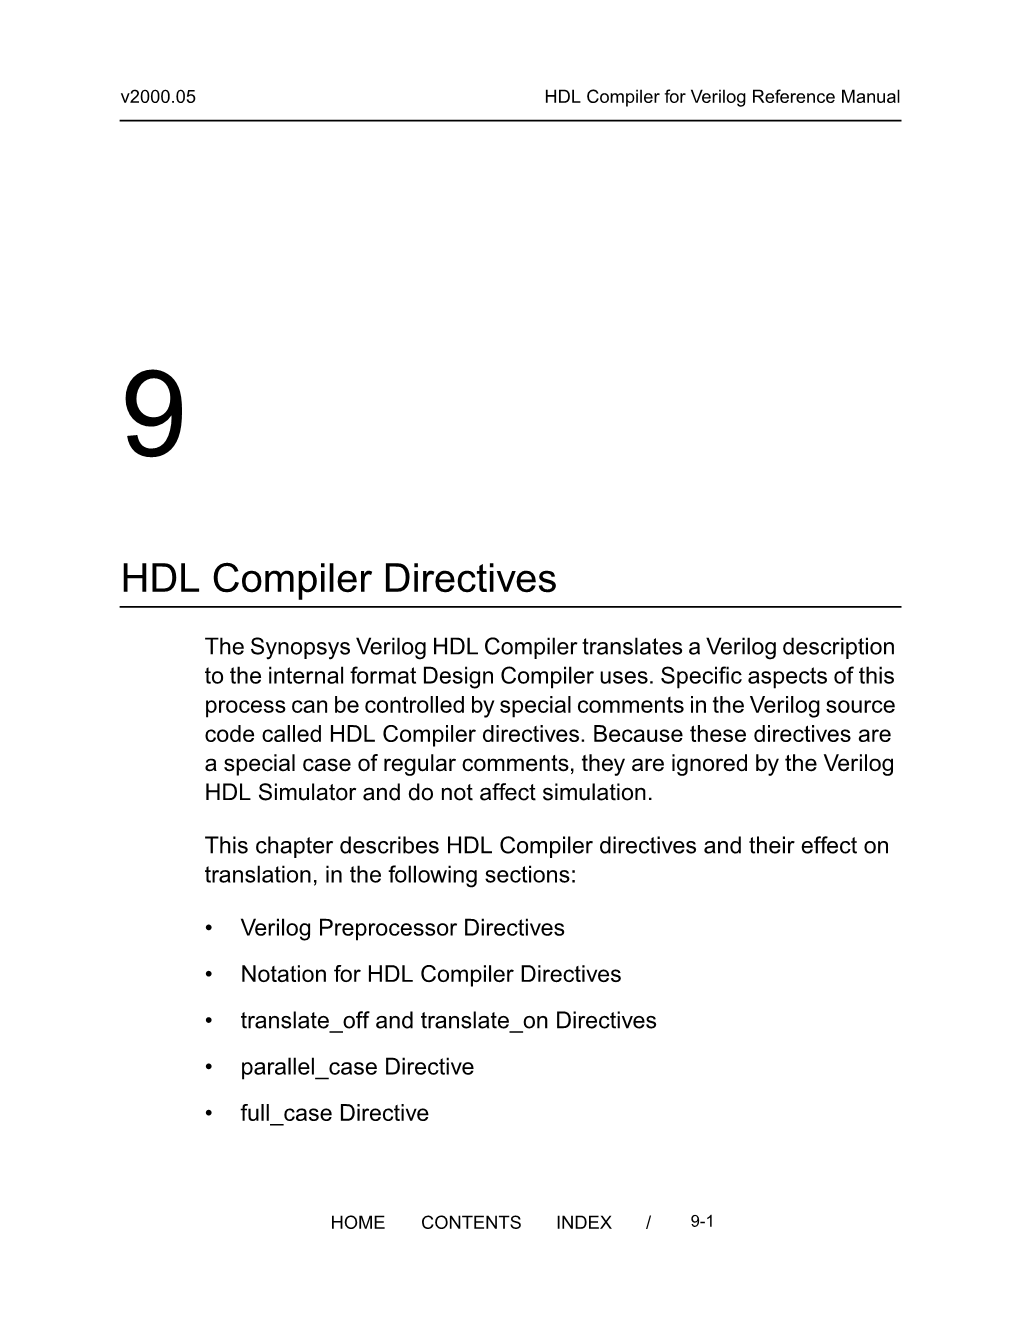 9. HDL Compiler Directives